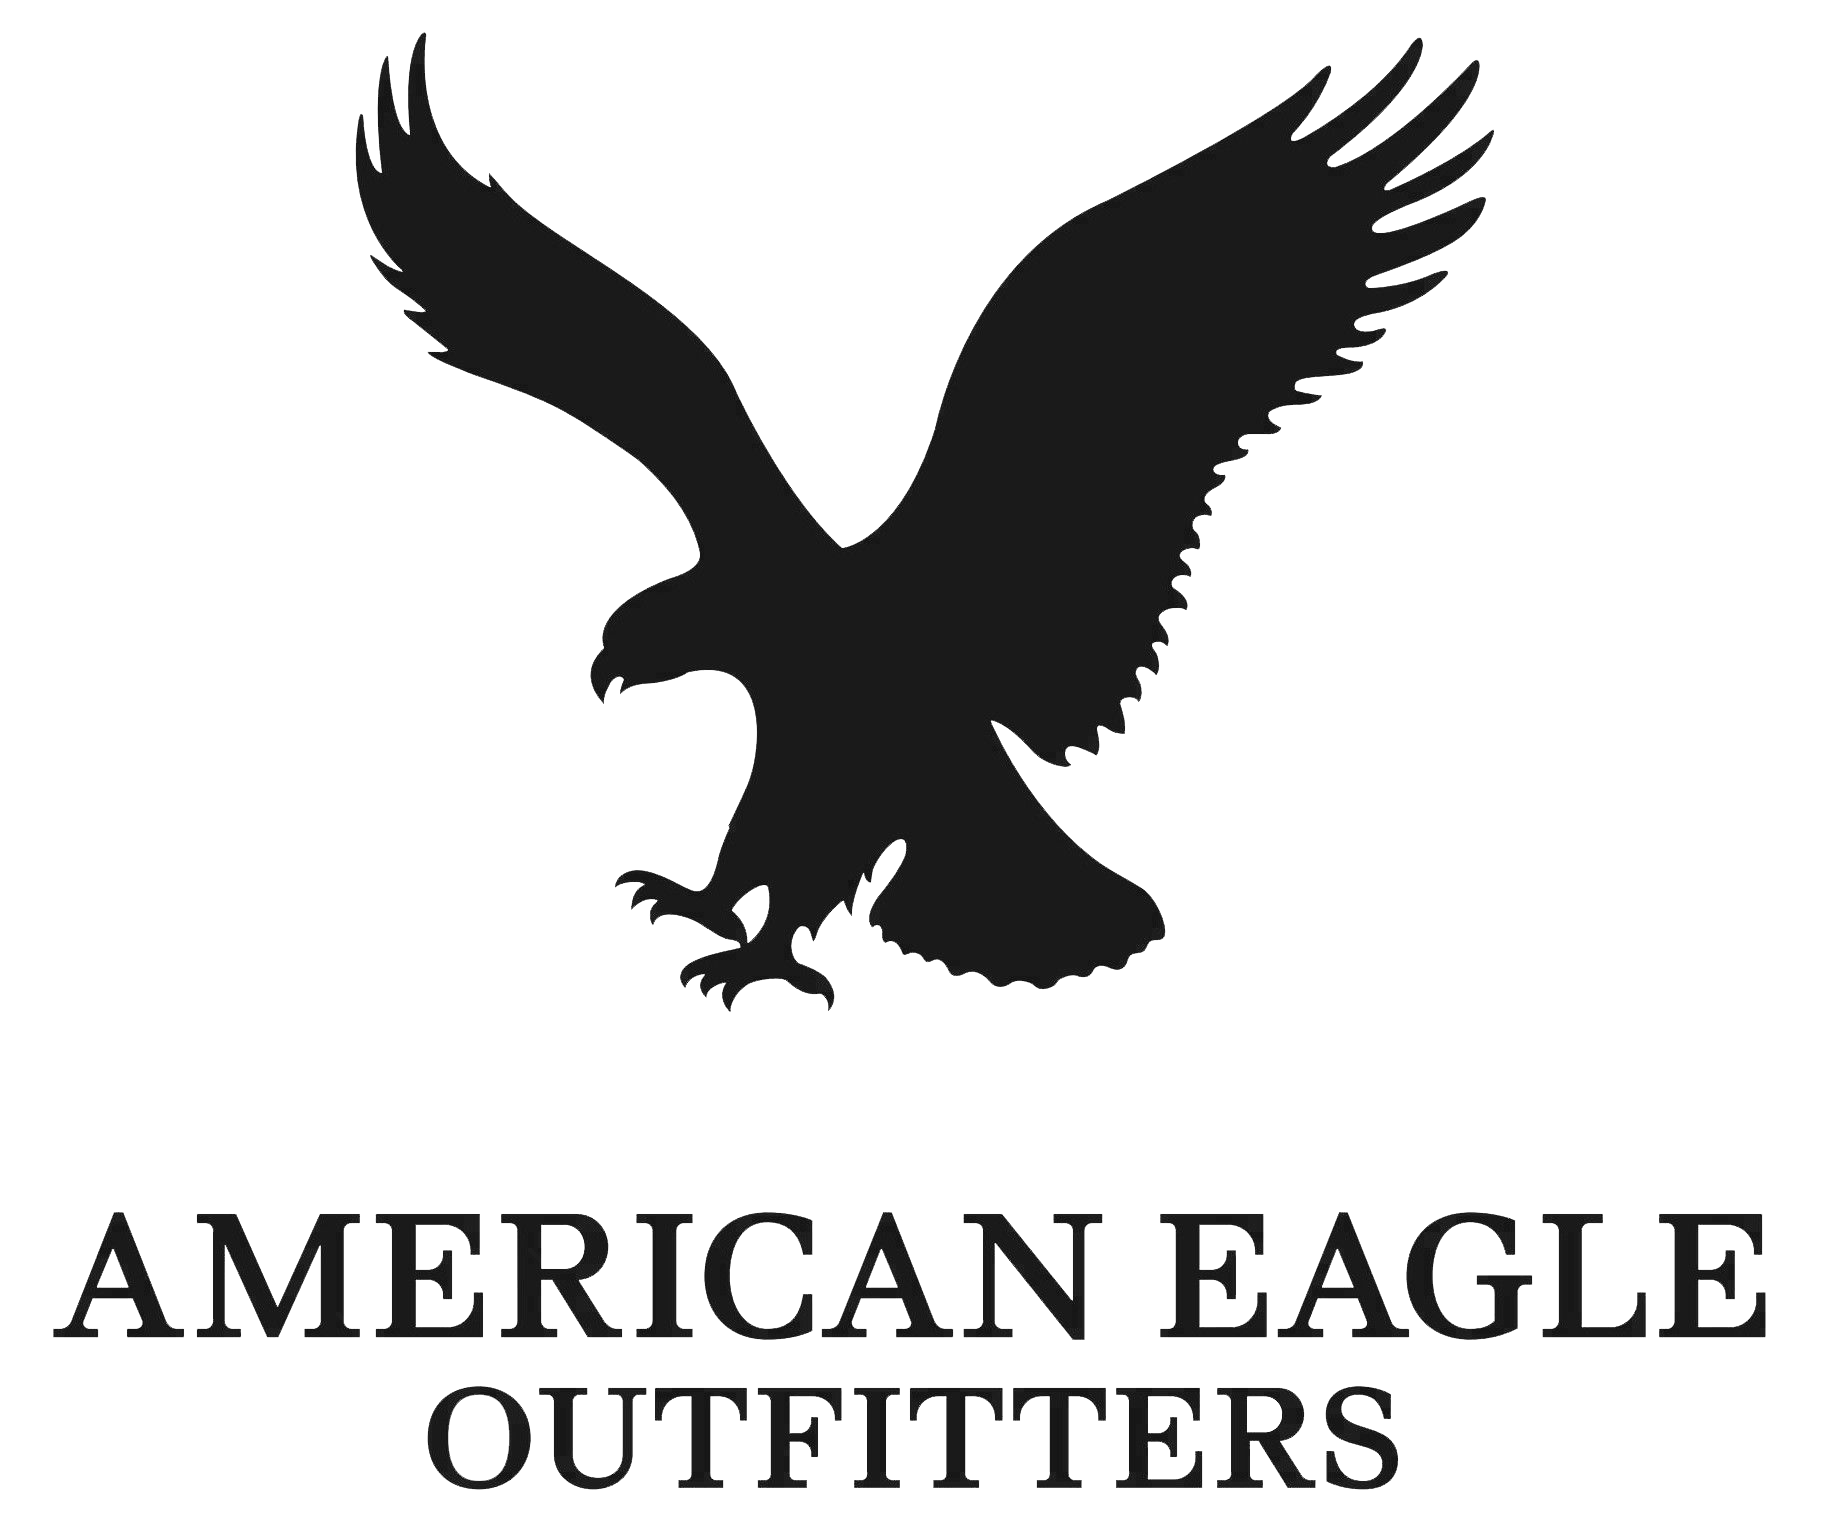 Американ игл. American Eagle Outfitters одежда. American Eagle логотип. Логотип птица.